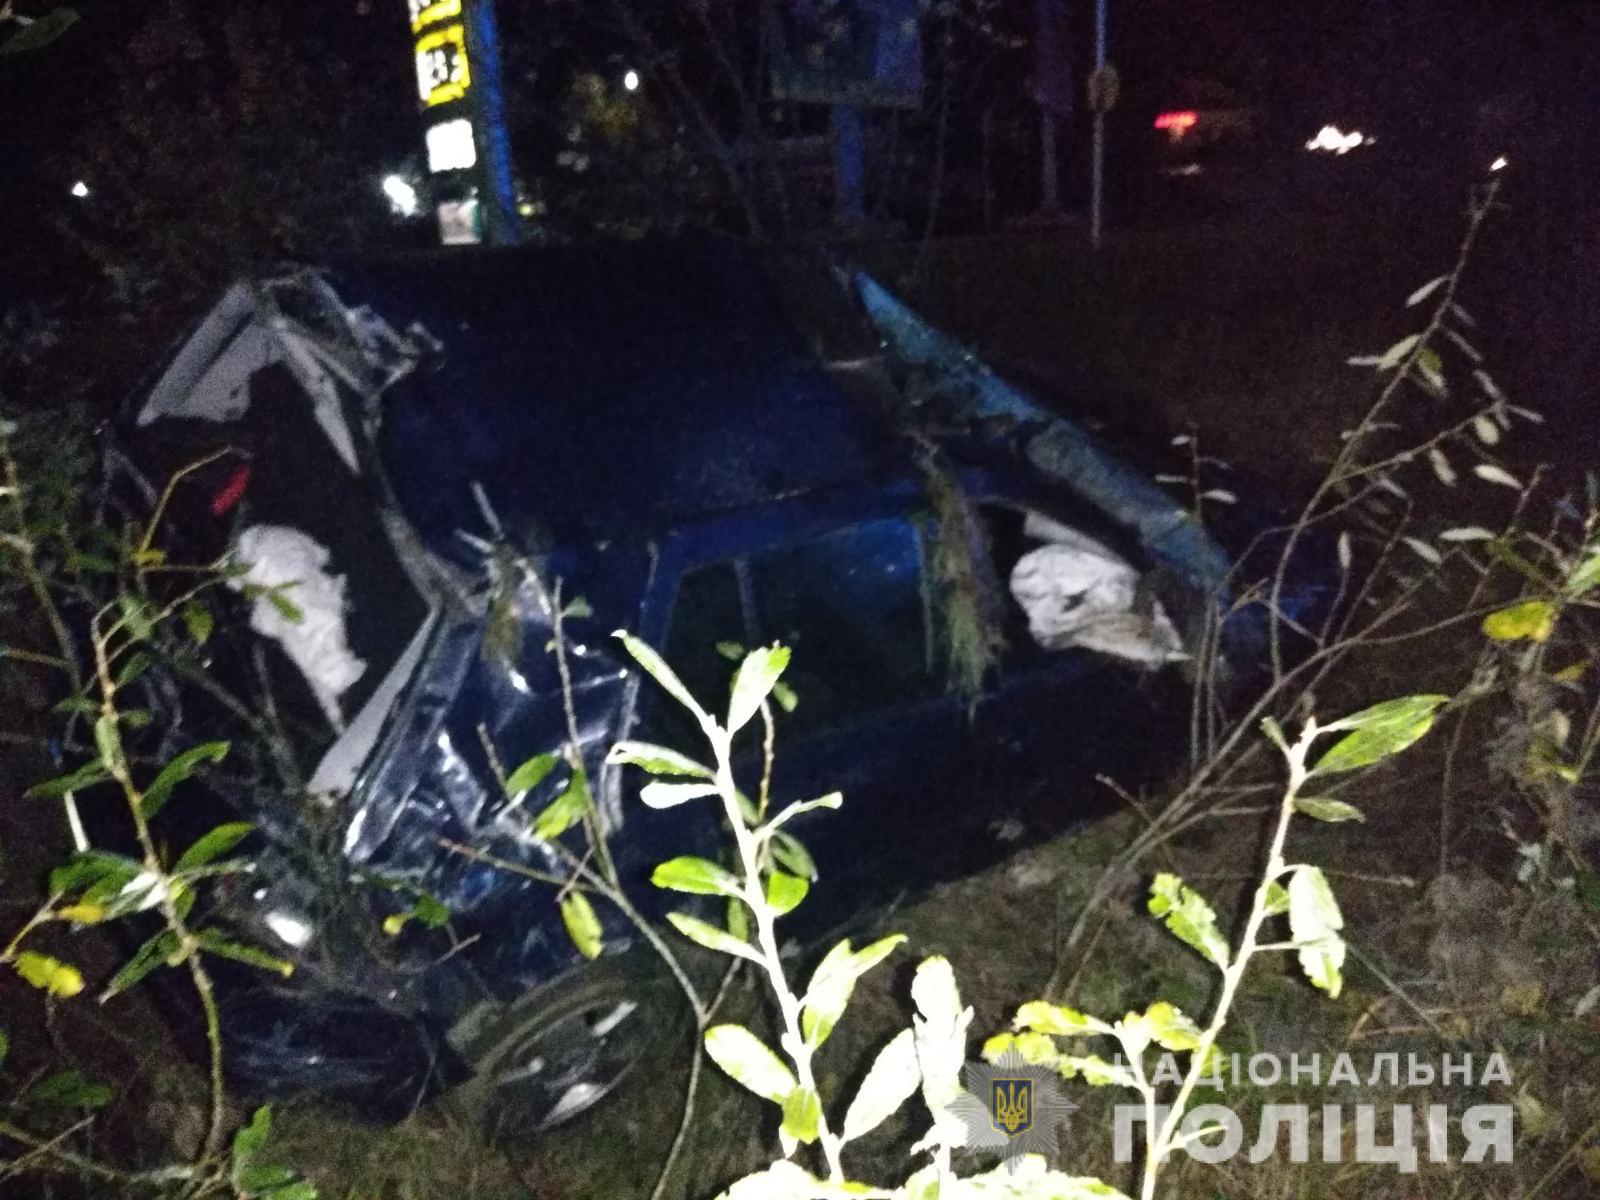 Працівники поліції Мукачівського районного відділення  розпочали кримінальне провадження за фактом автопригоди, яка сталася на об‘їзній дорозі Мукачева. В результаті ДТП загинула жінка-пасажир.